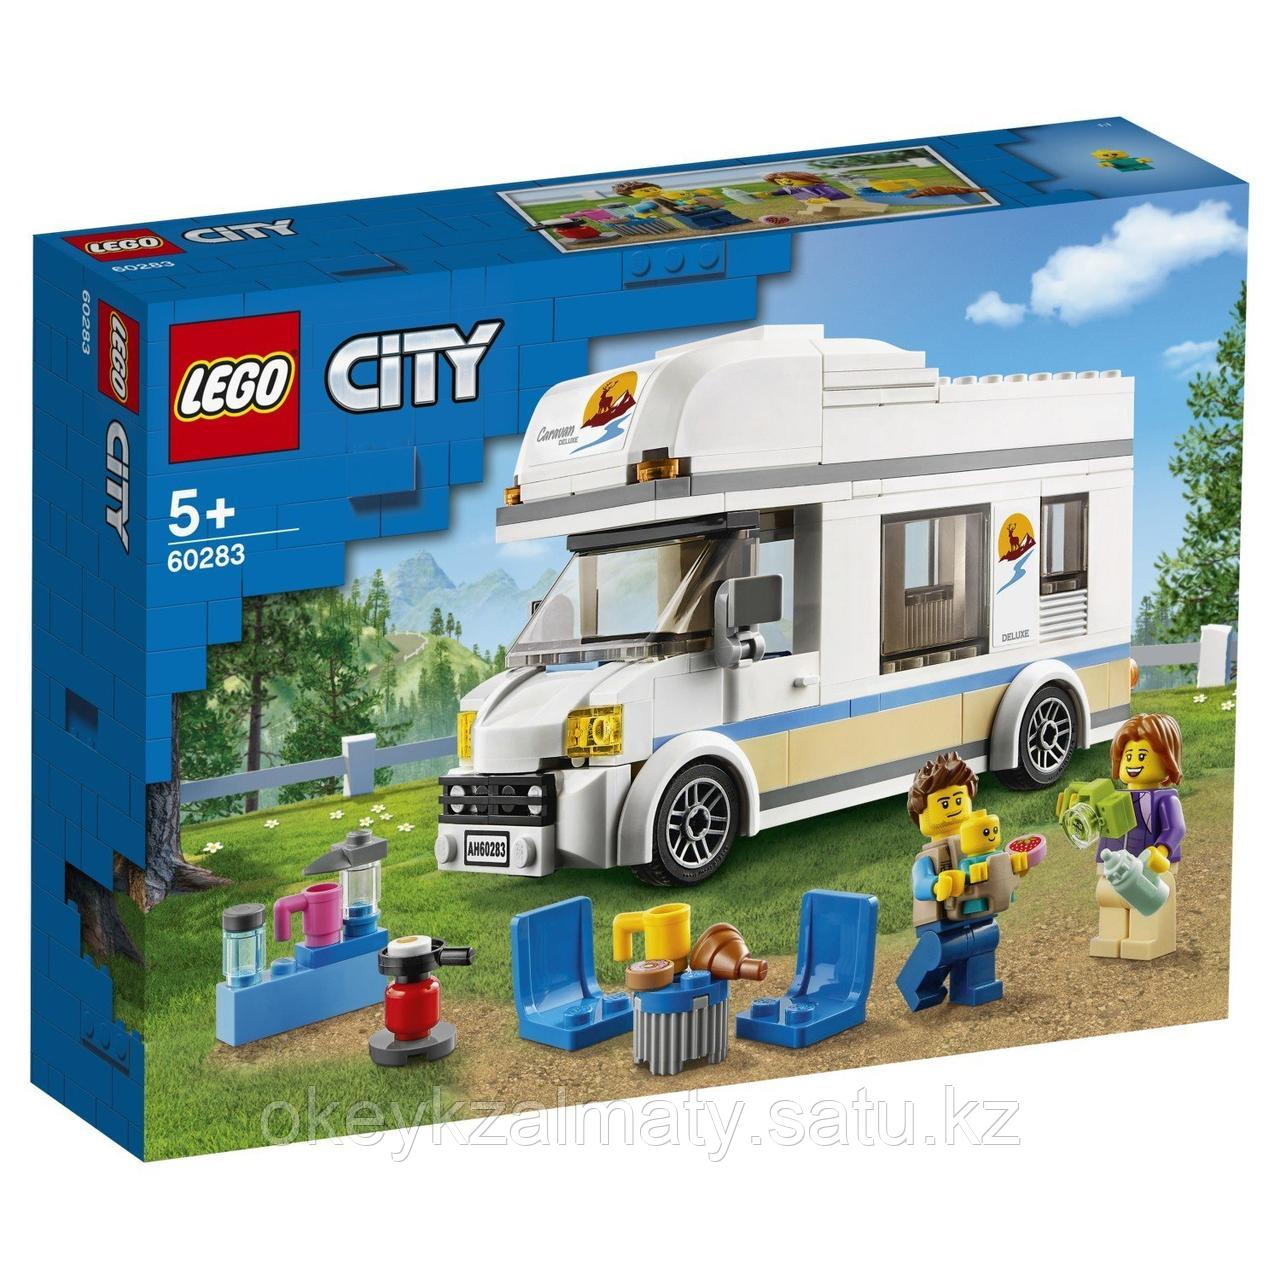 LEGO City: Отпуск в доме на колесах 60283